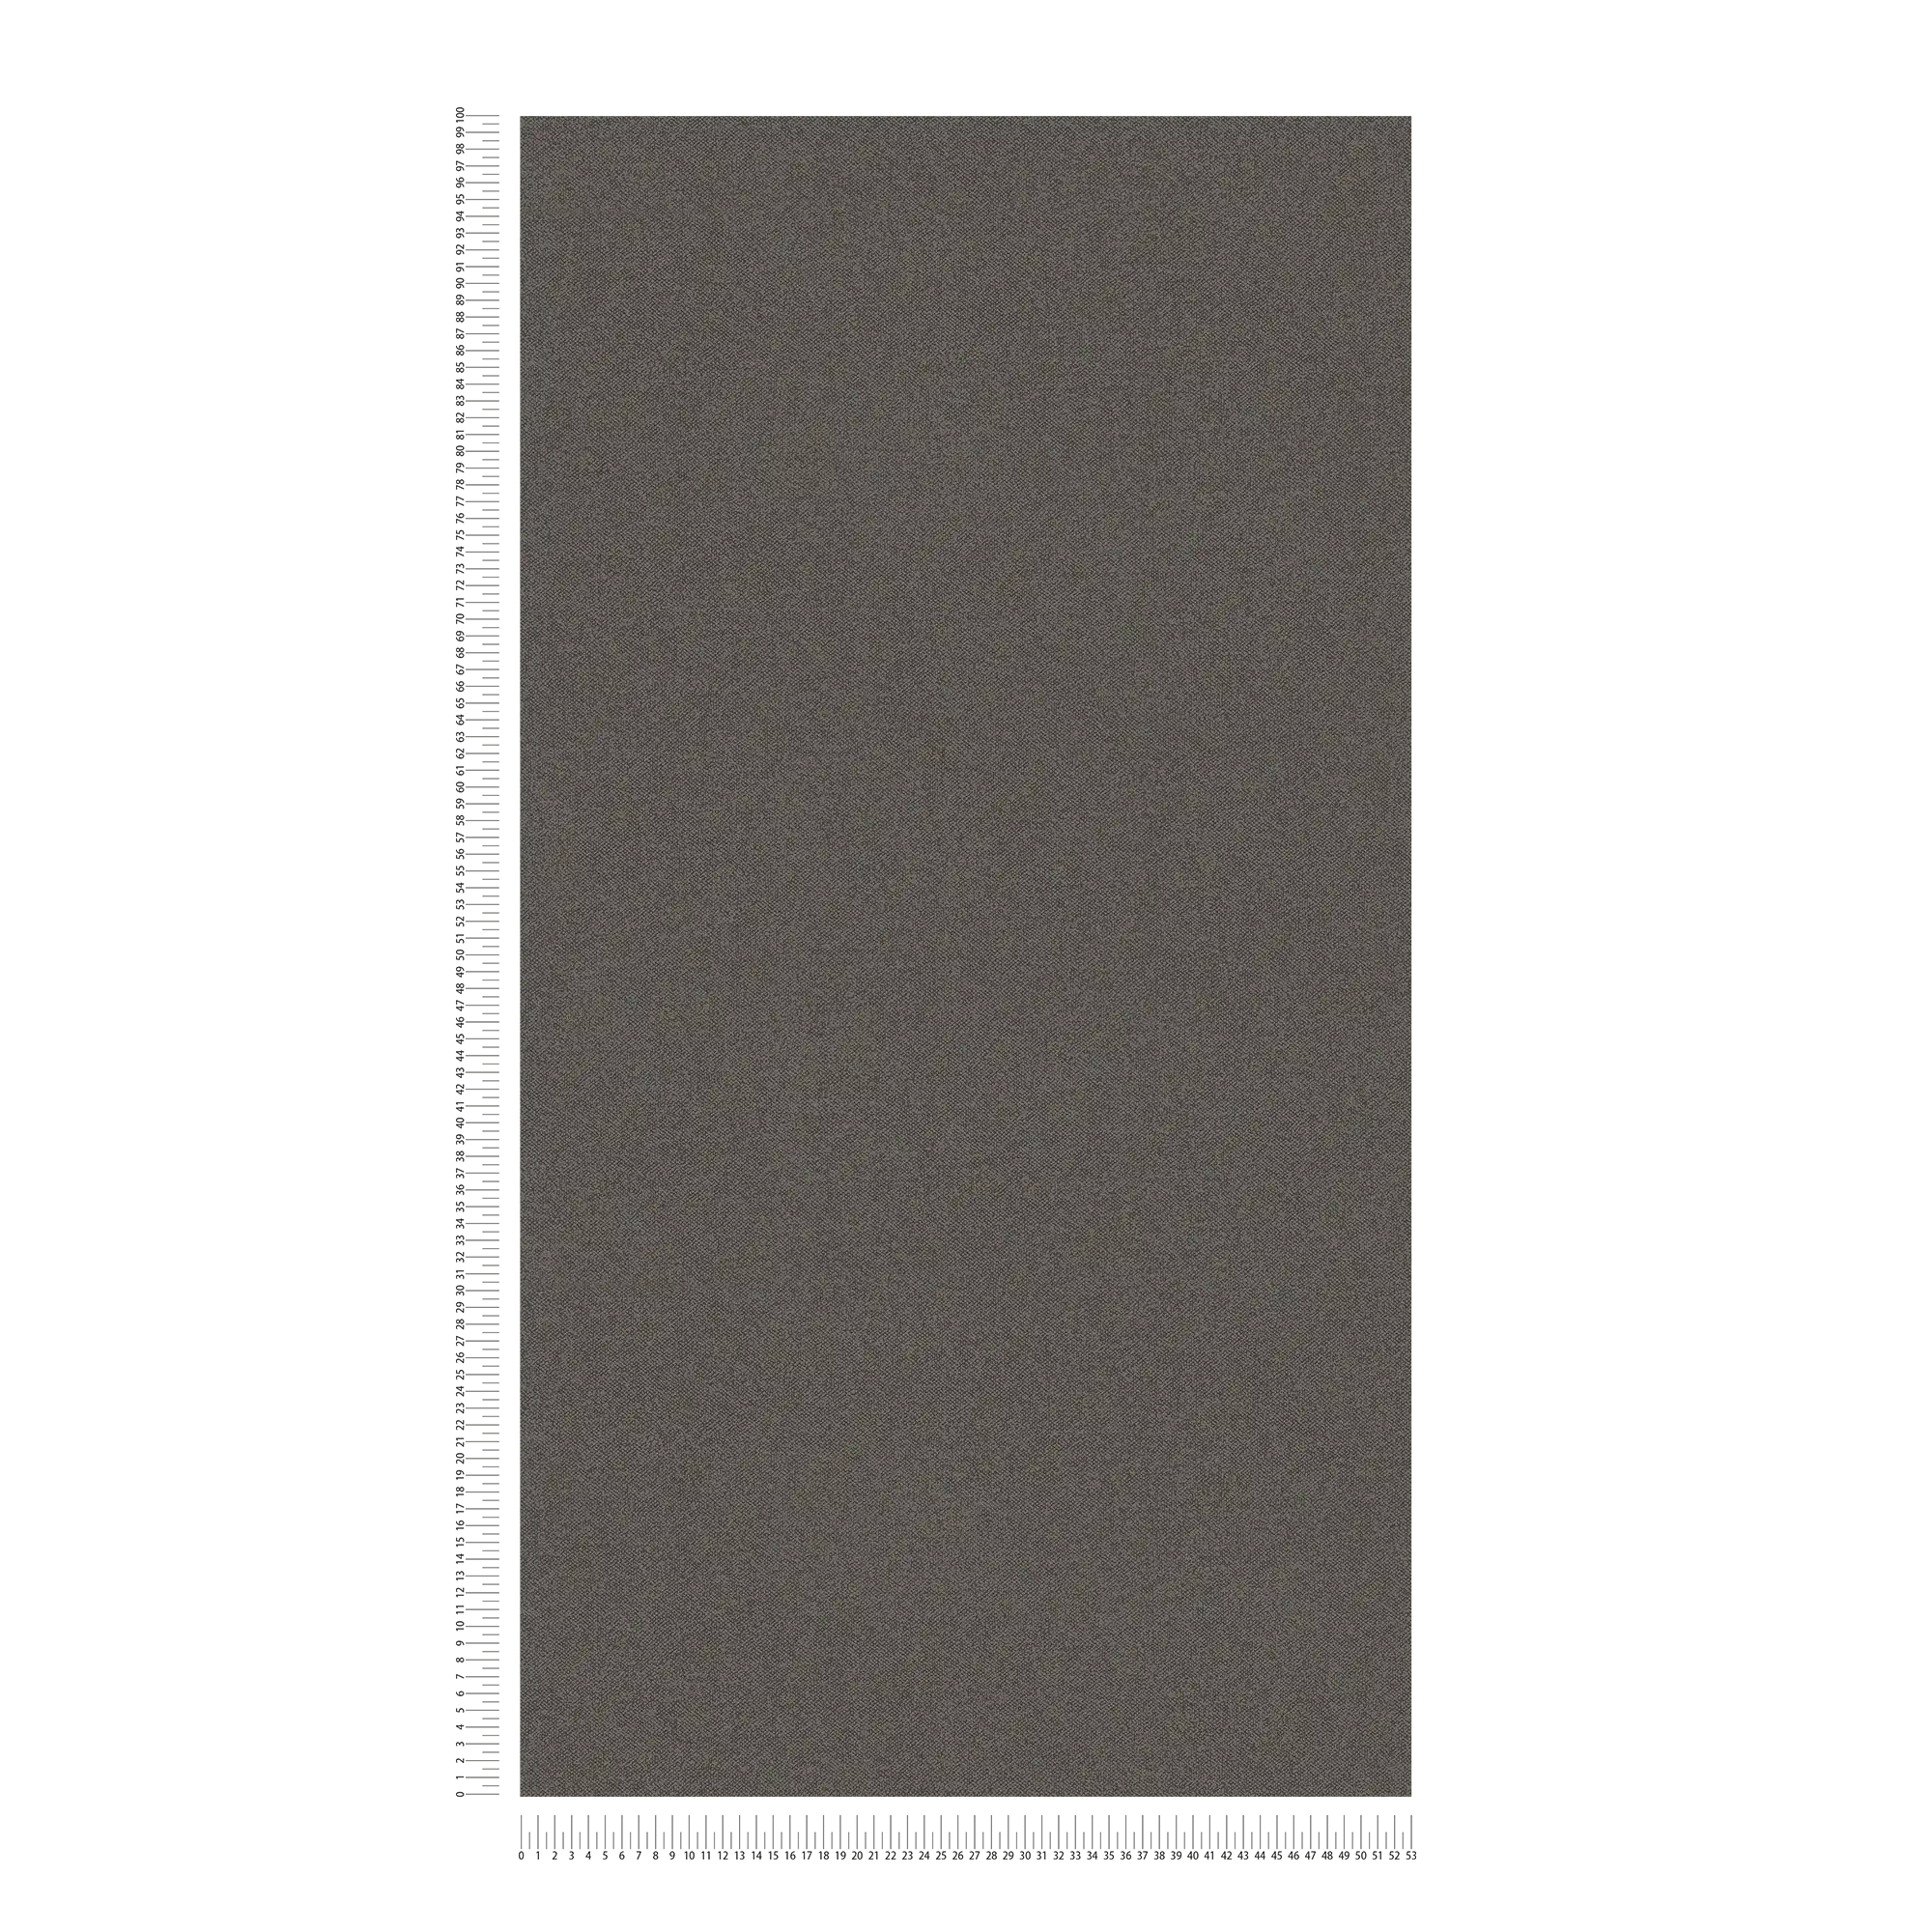             Papier peint uni aspect lin - marron, noir
        